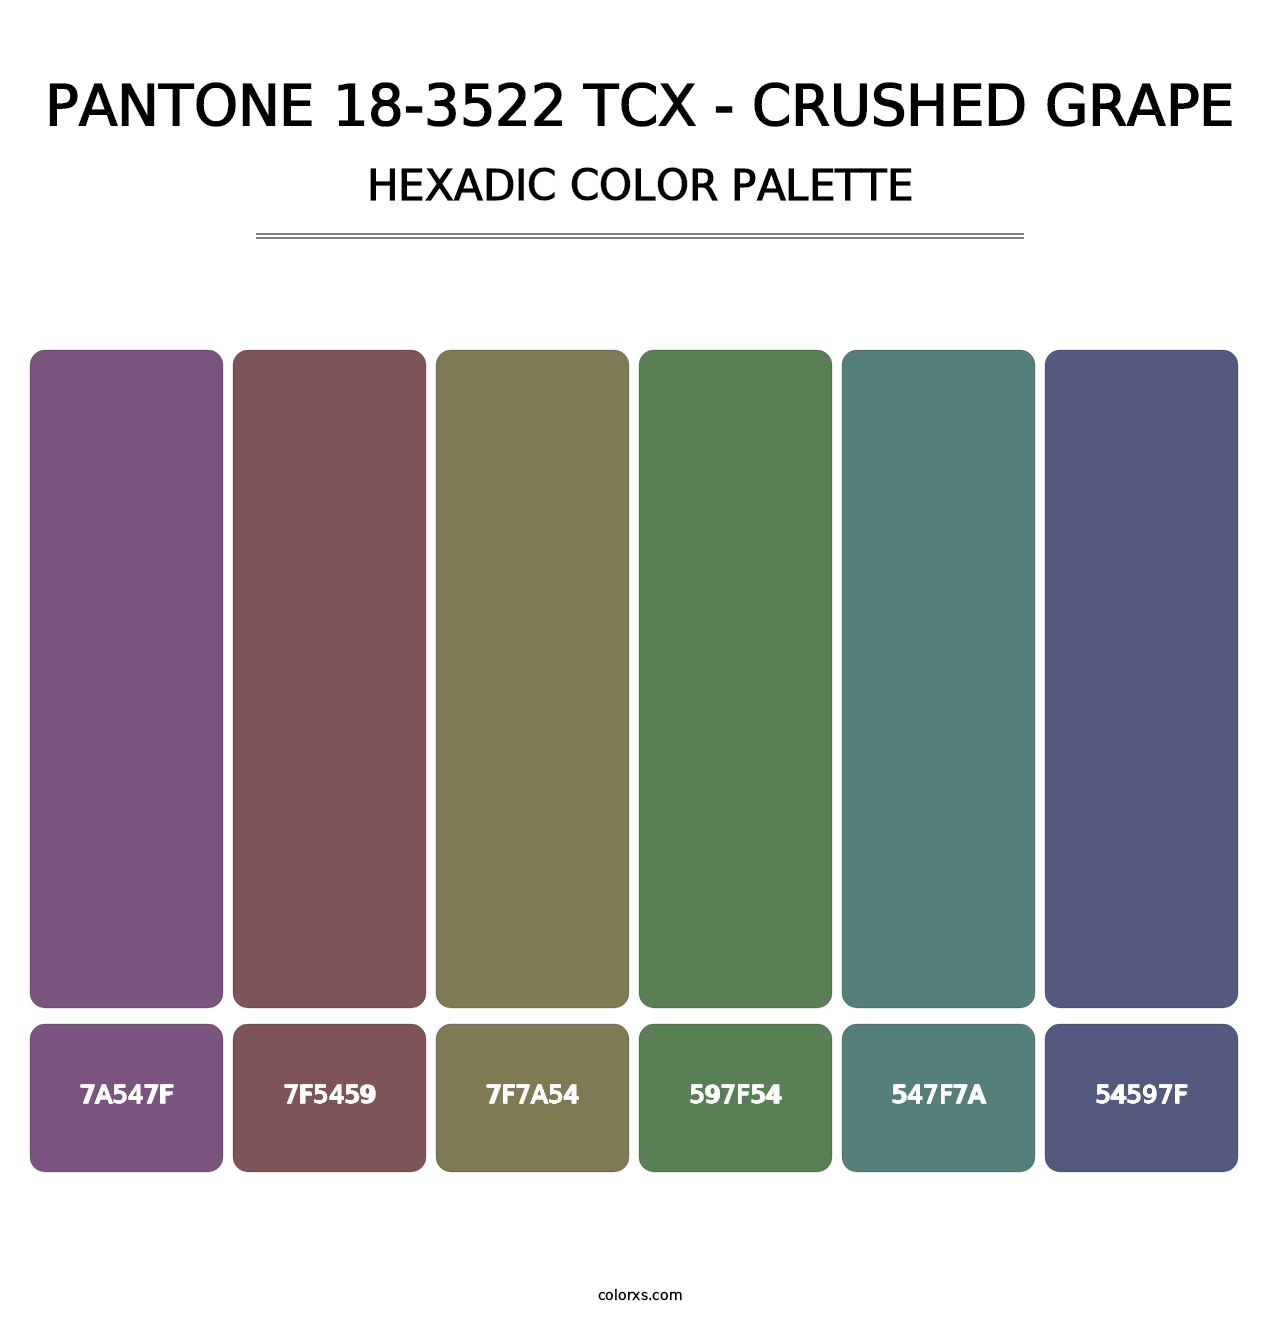 PANTONE 18-3522 TCX - Crushed Grape - Hexadic Color Palette